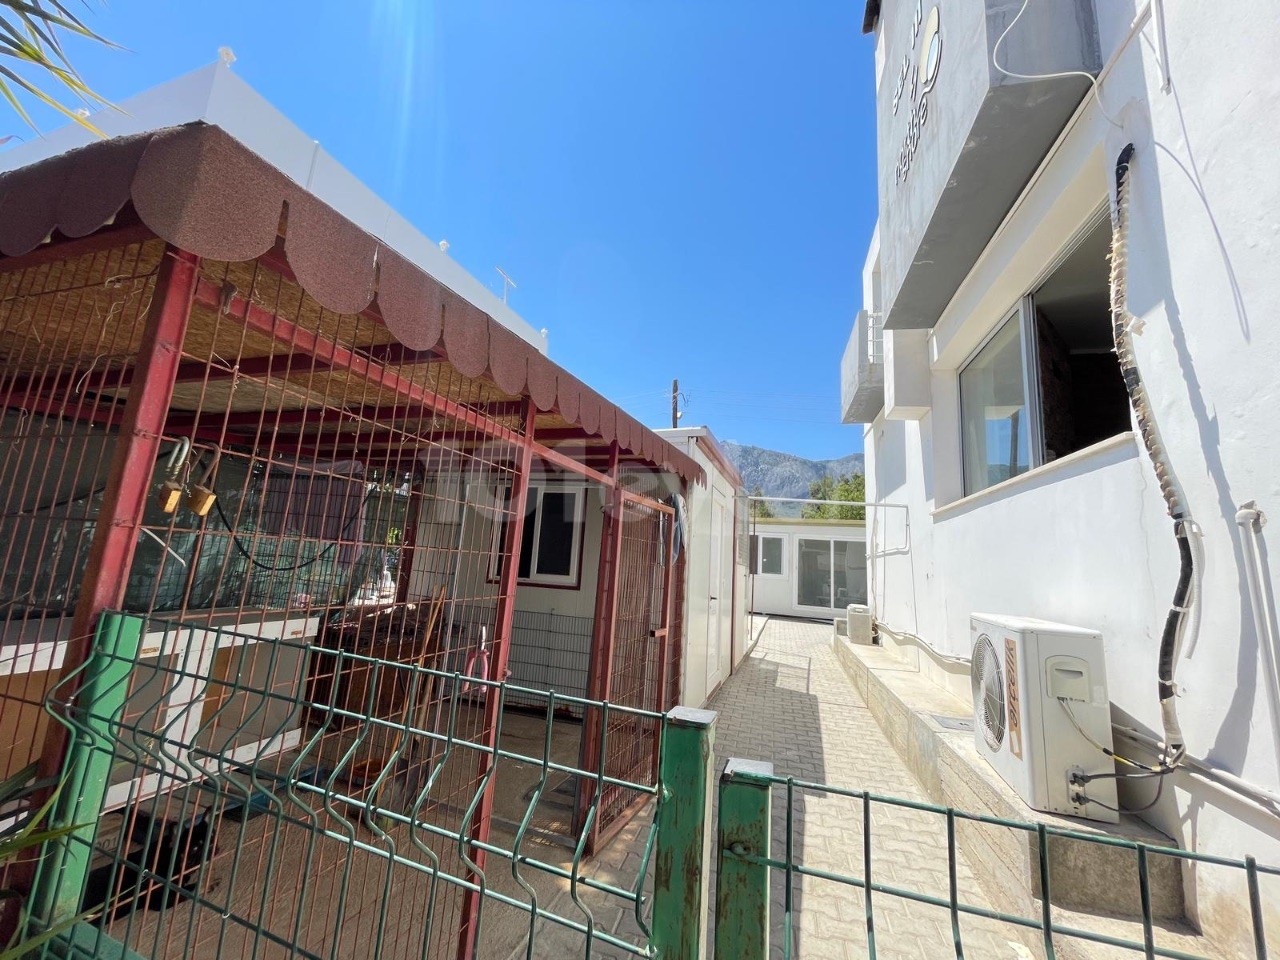 Продается квартира в Алсанджаке, в пешей доступности от моря